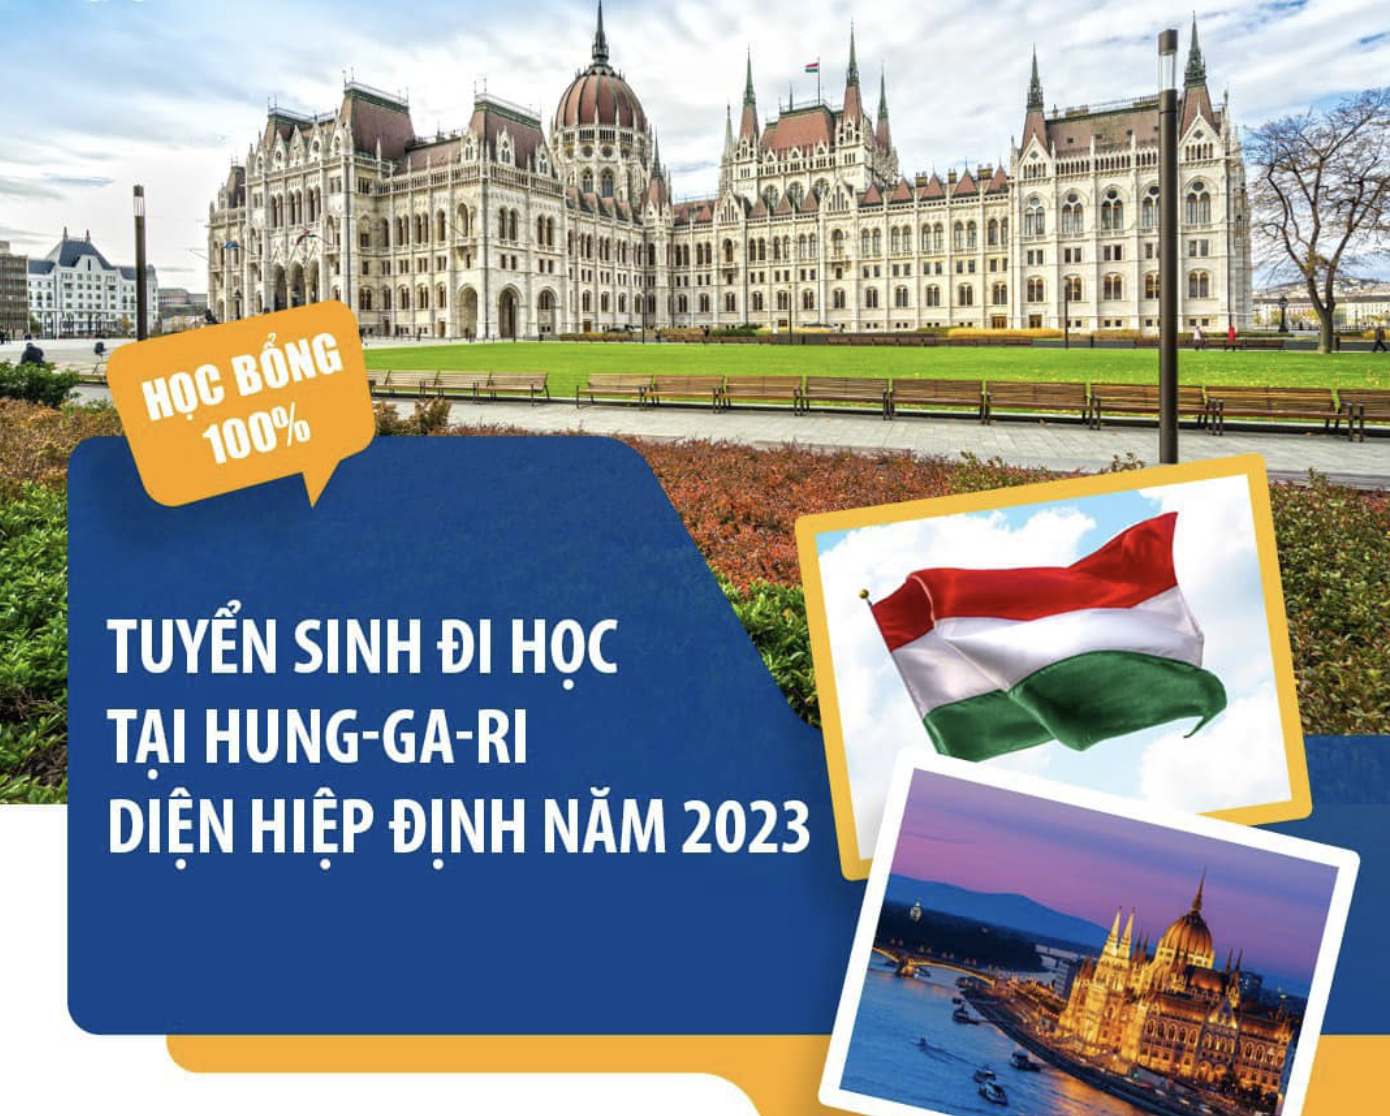 Thông báo tuyển sinh đi học tại Hung-ga-ri diện hiệp định năm 2023